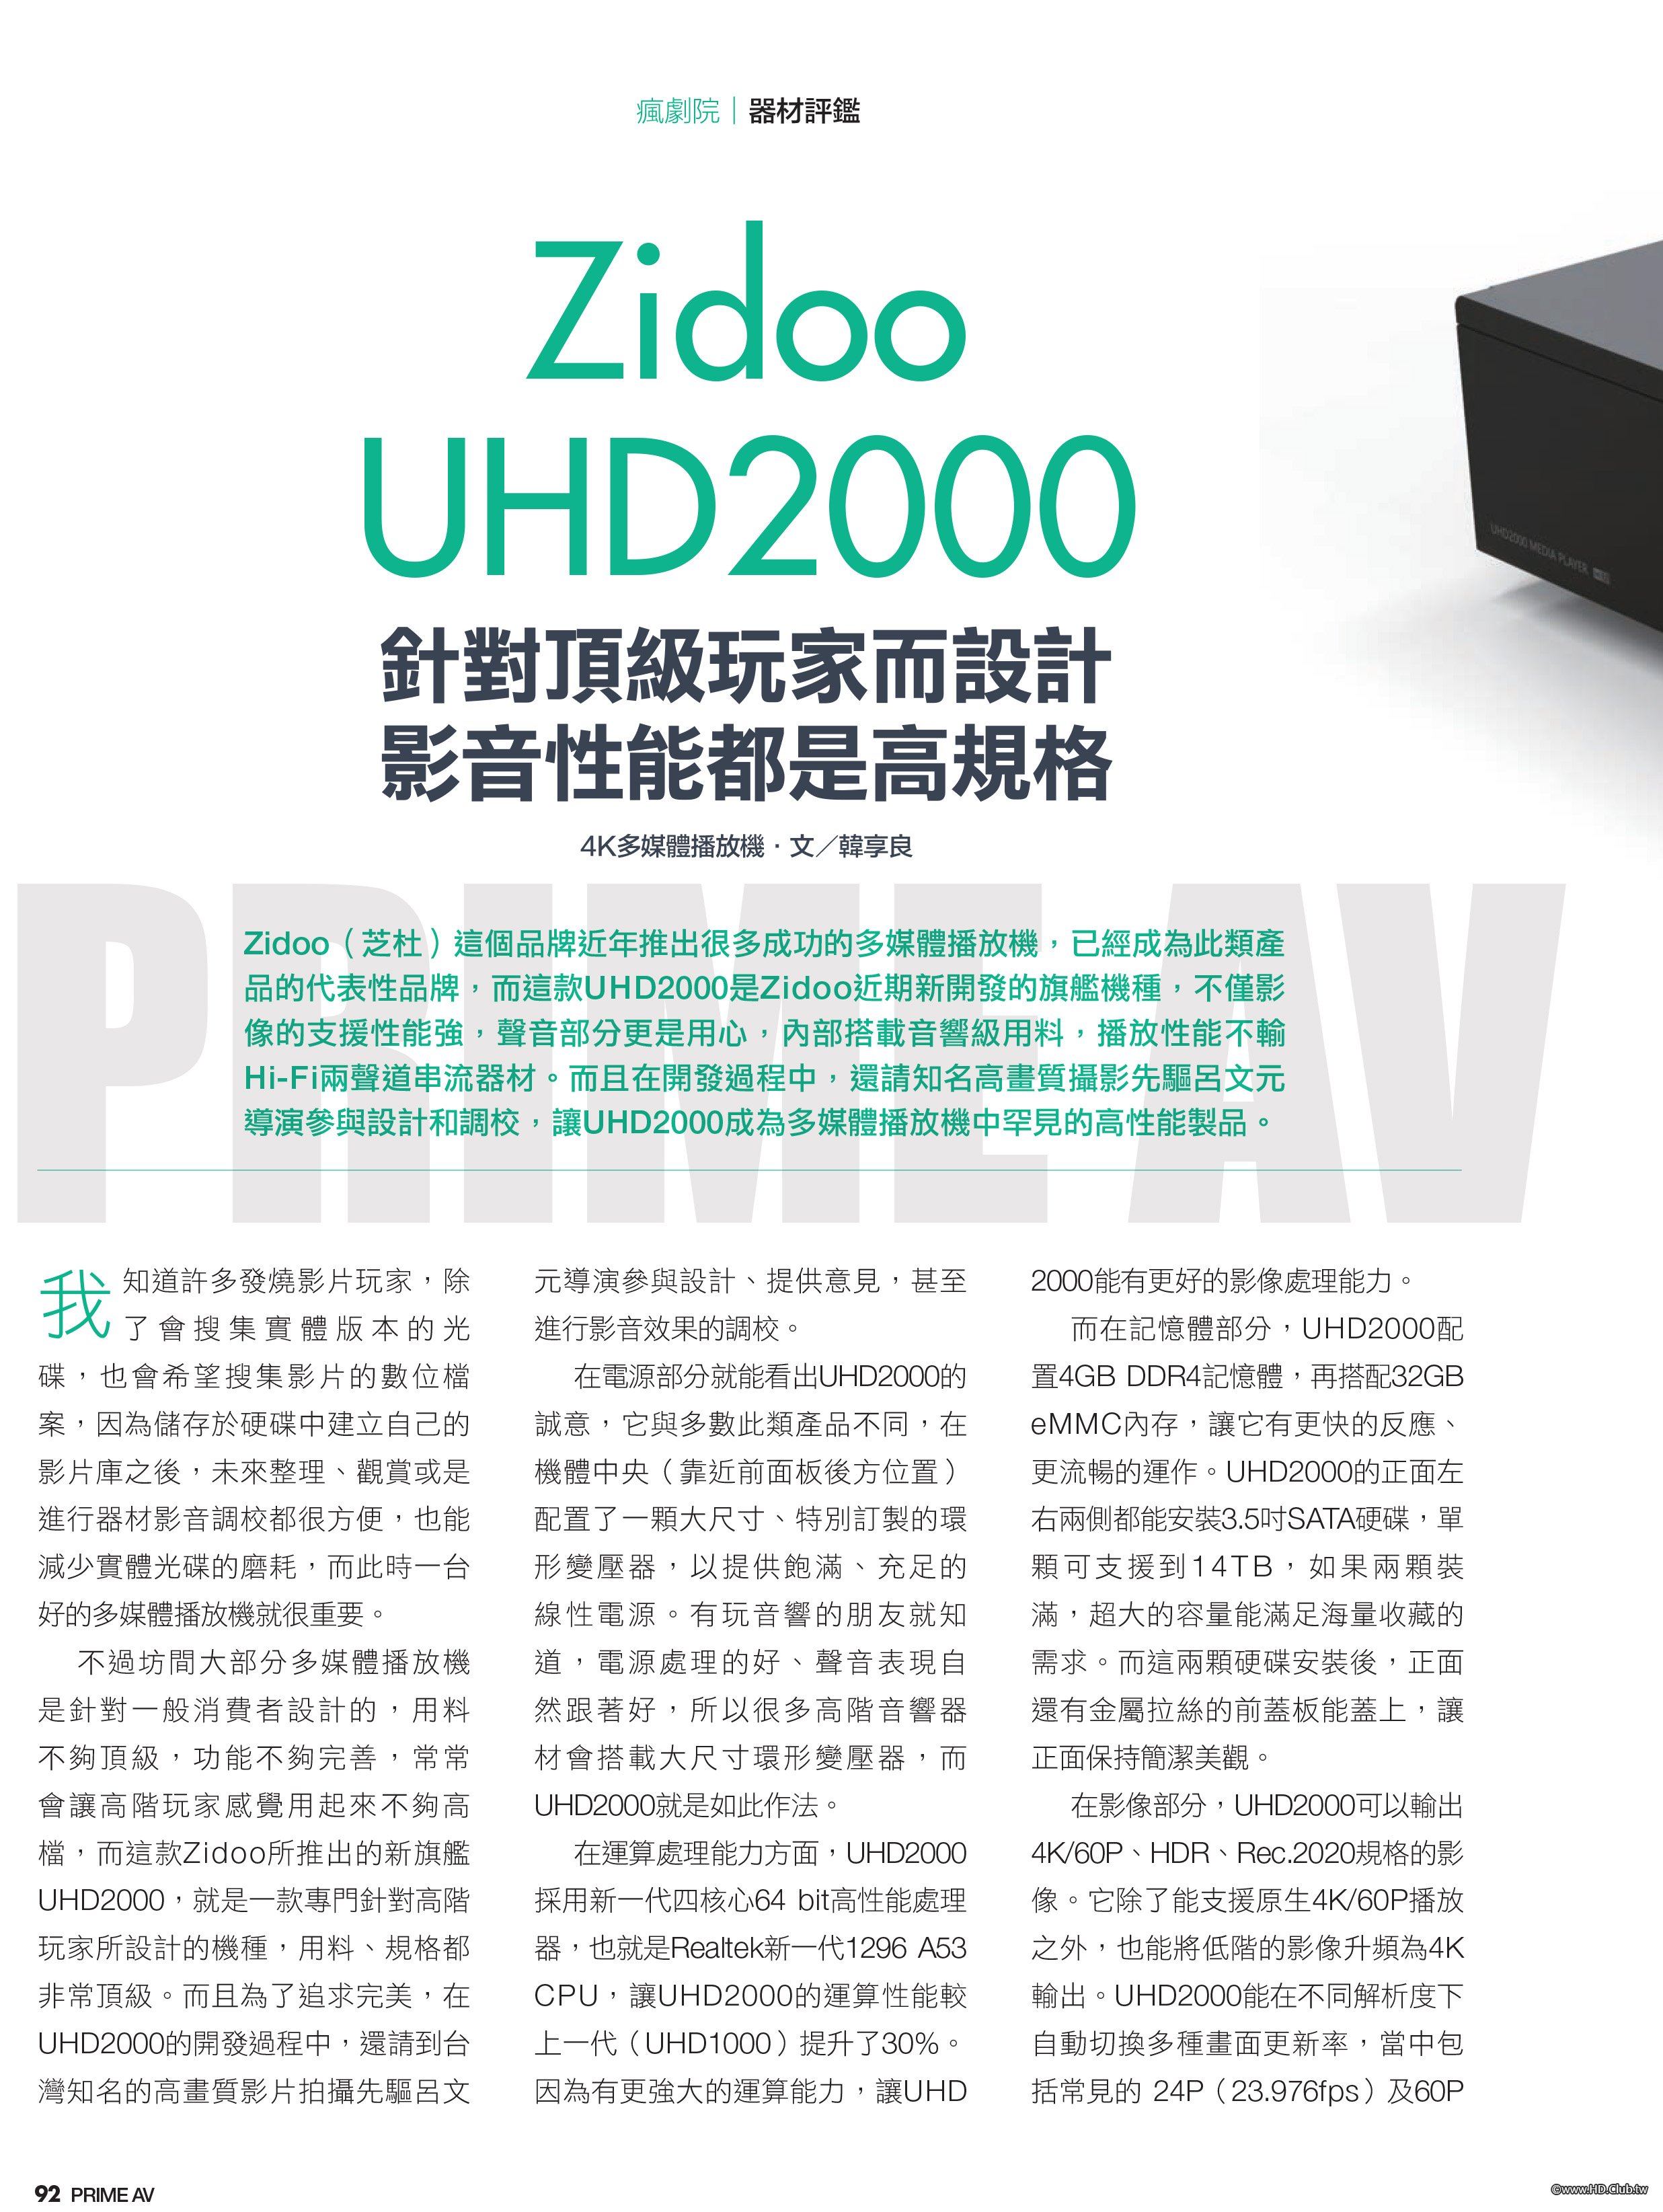 新視聽最佳推薦-Zidoo UHD2000-1.jpg